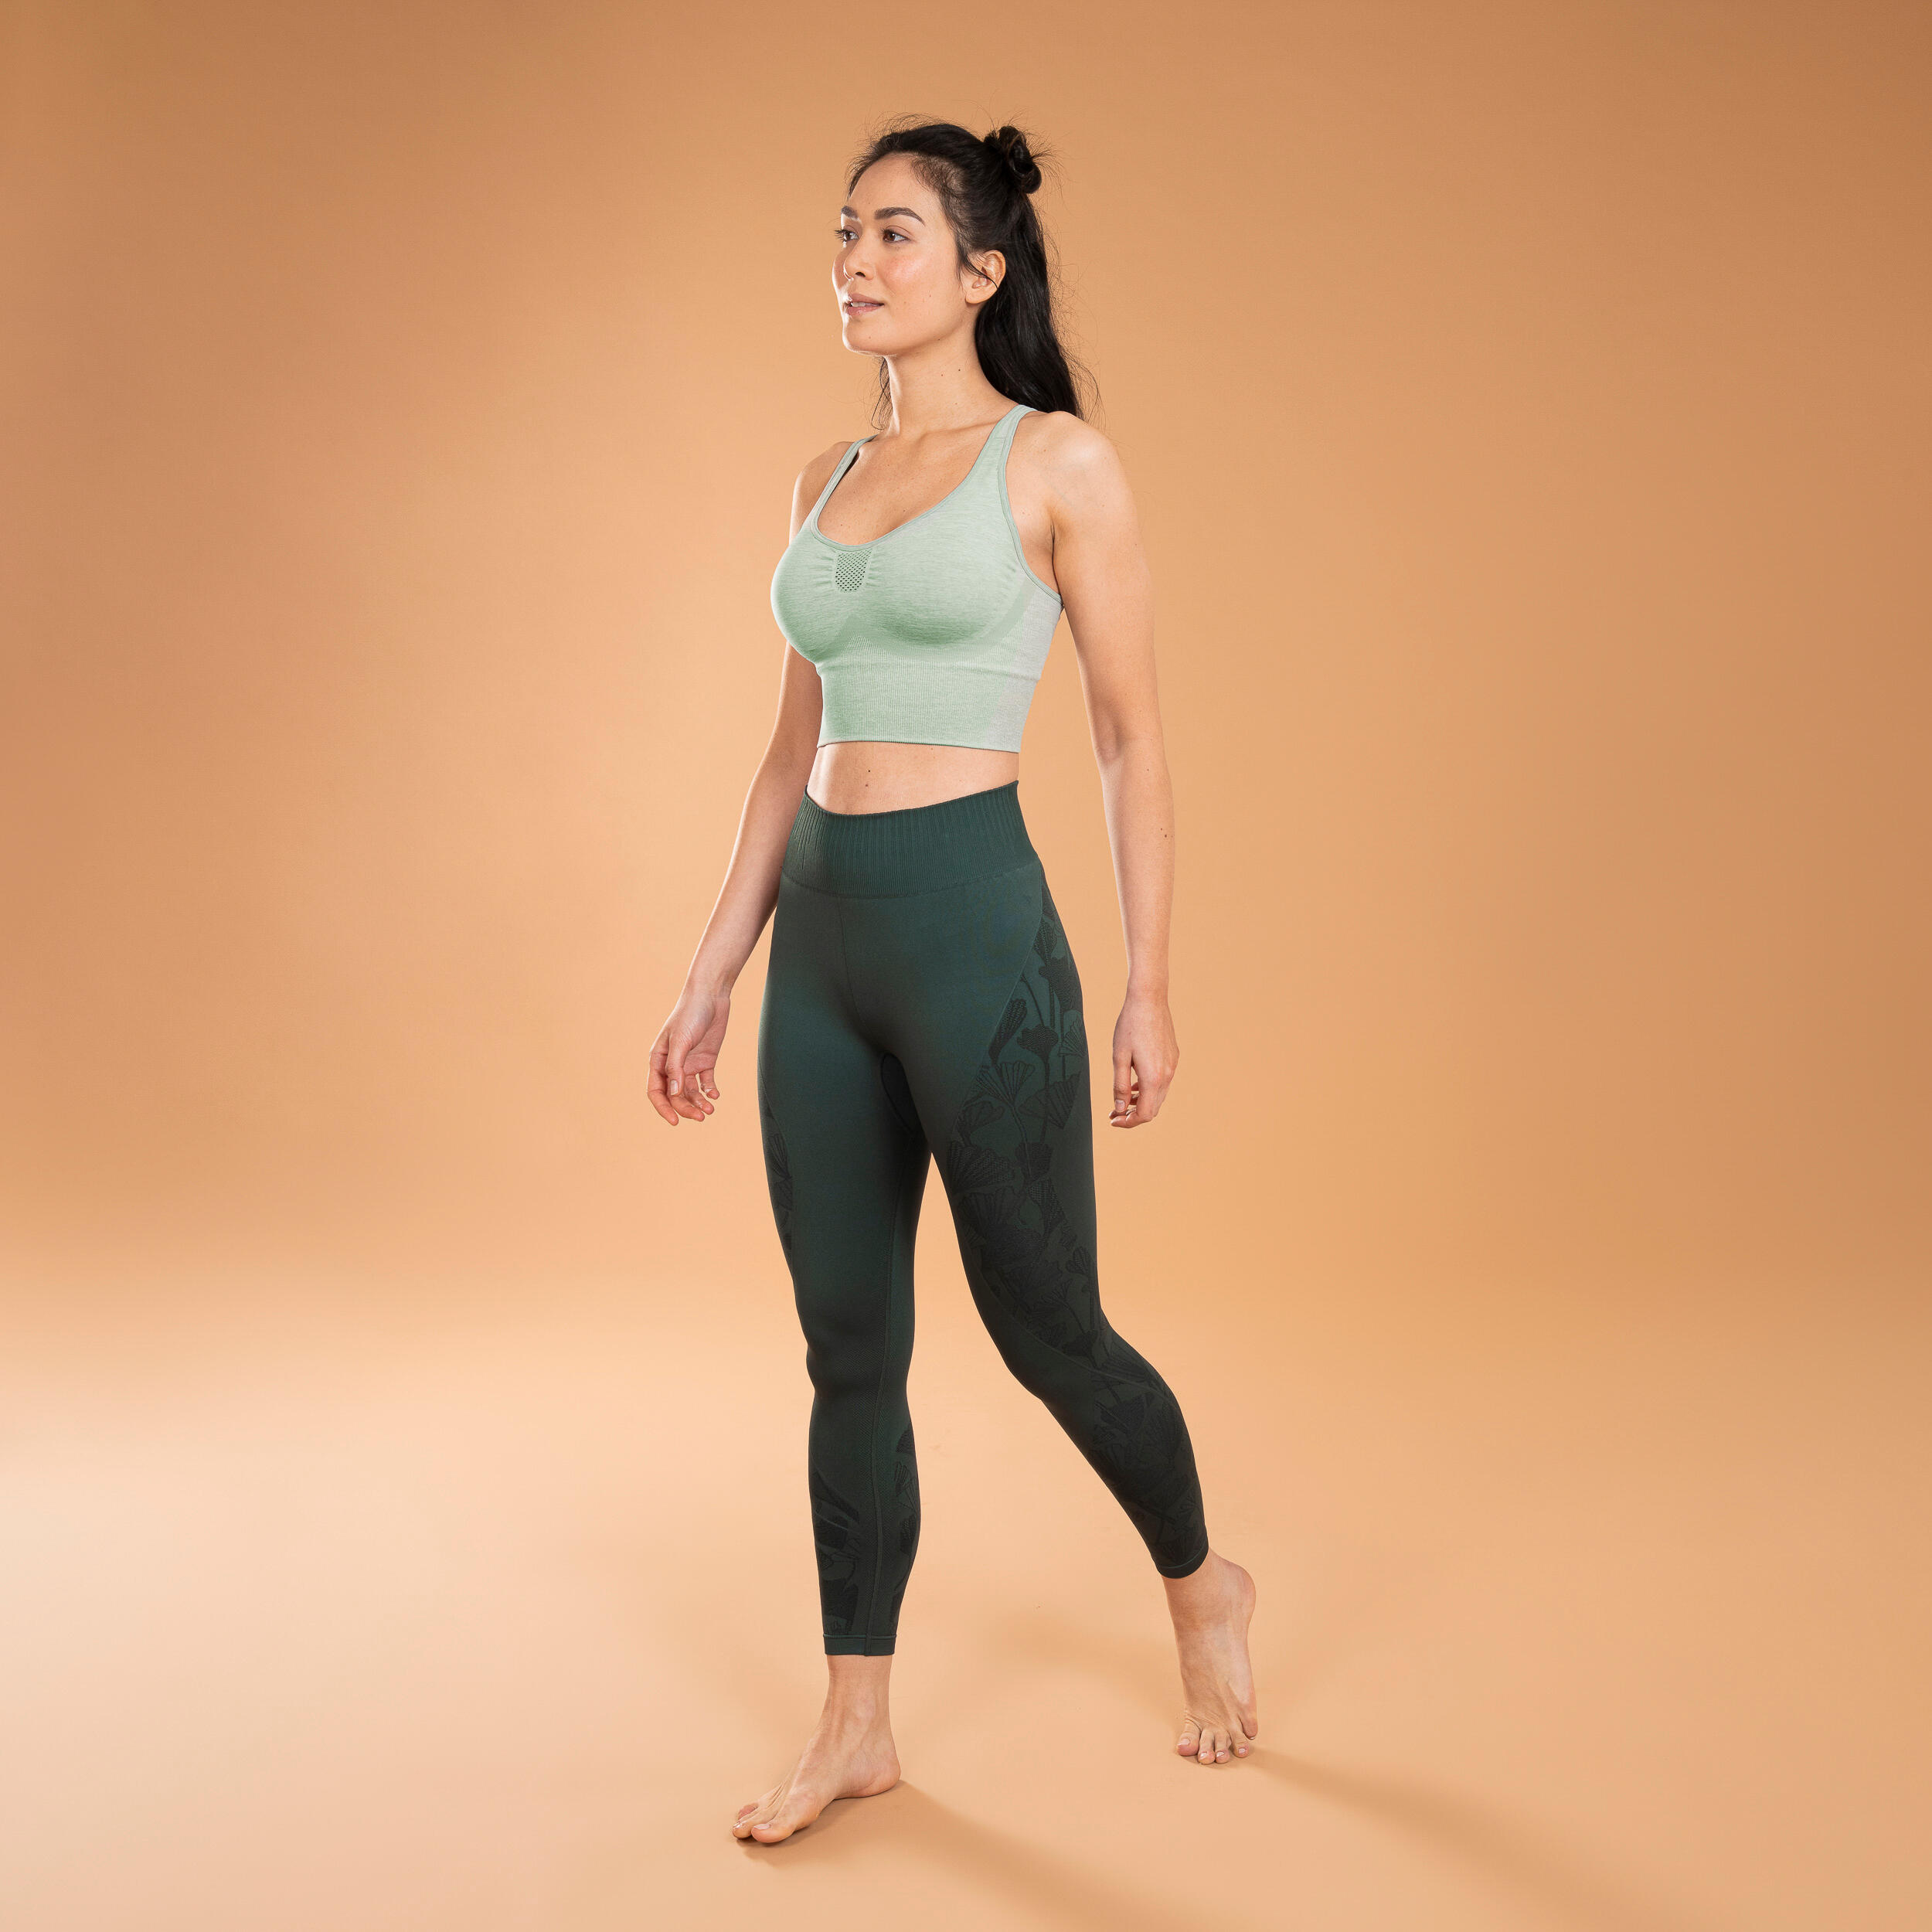 Seamless 7/8 Dynamic Yoga Leggings - Mottled Grey - StoresRadar